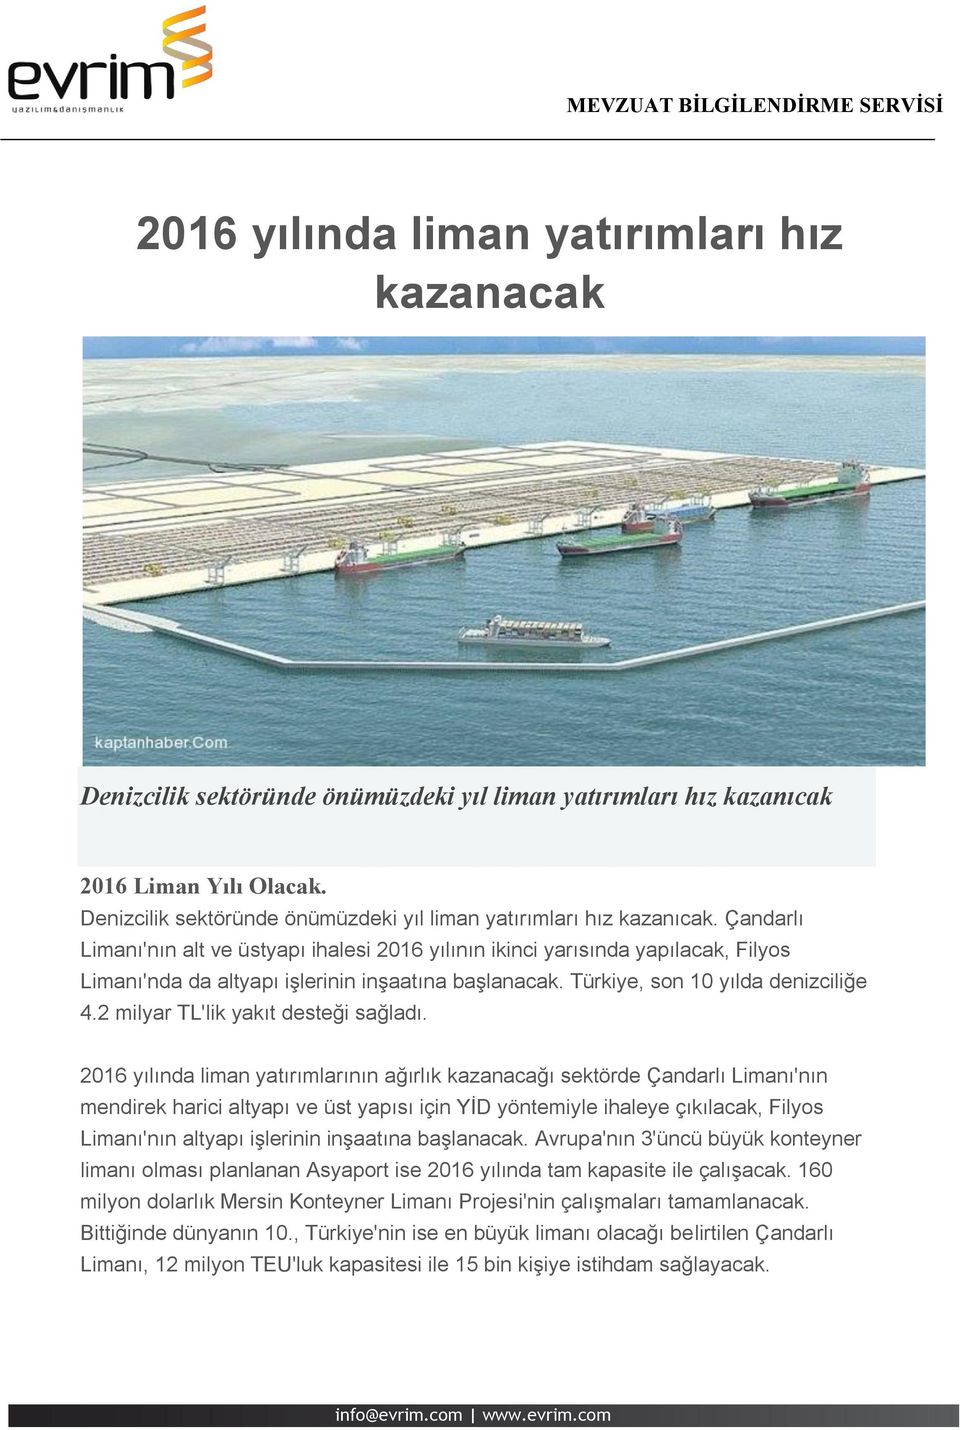 Çandarlı Limanı'nın alt ve üstyapı ihalesi 2016 yılının ikinci yarısında yapılacak, Filyos Limanı'nda da altyapı işlerinin inşaatına başlanacak. Türkiye, son 10 yılda denizciliğe 4.